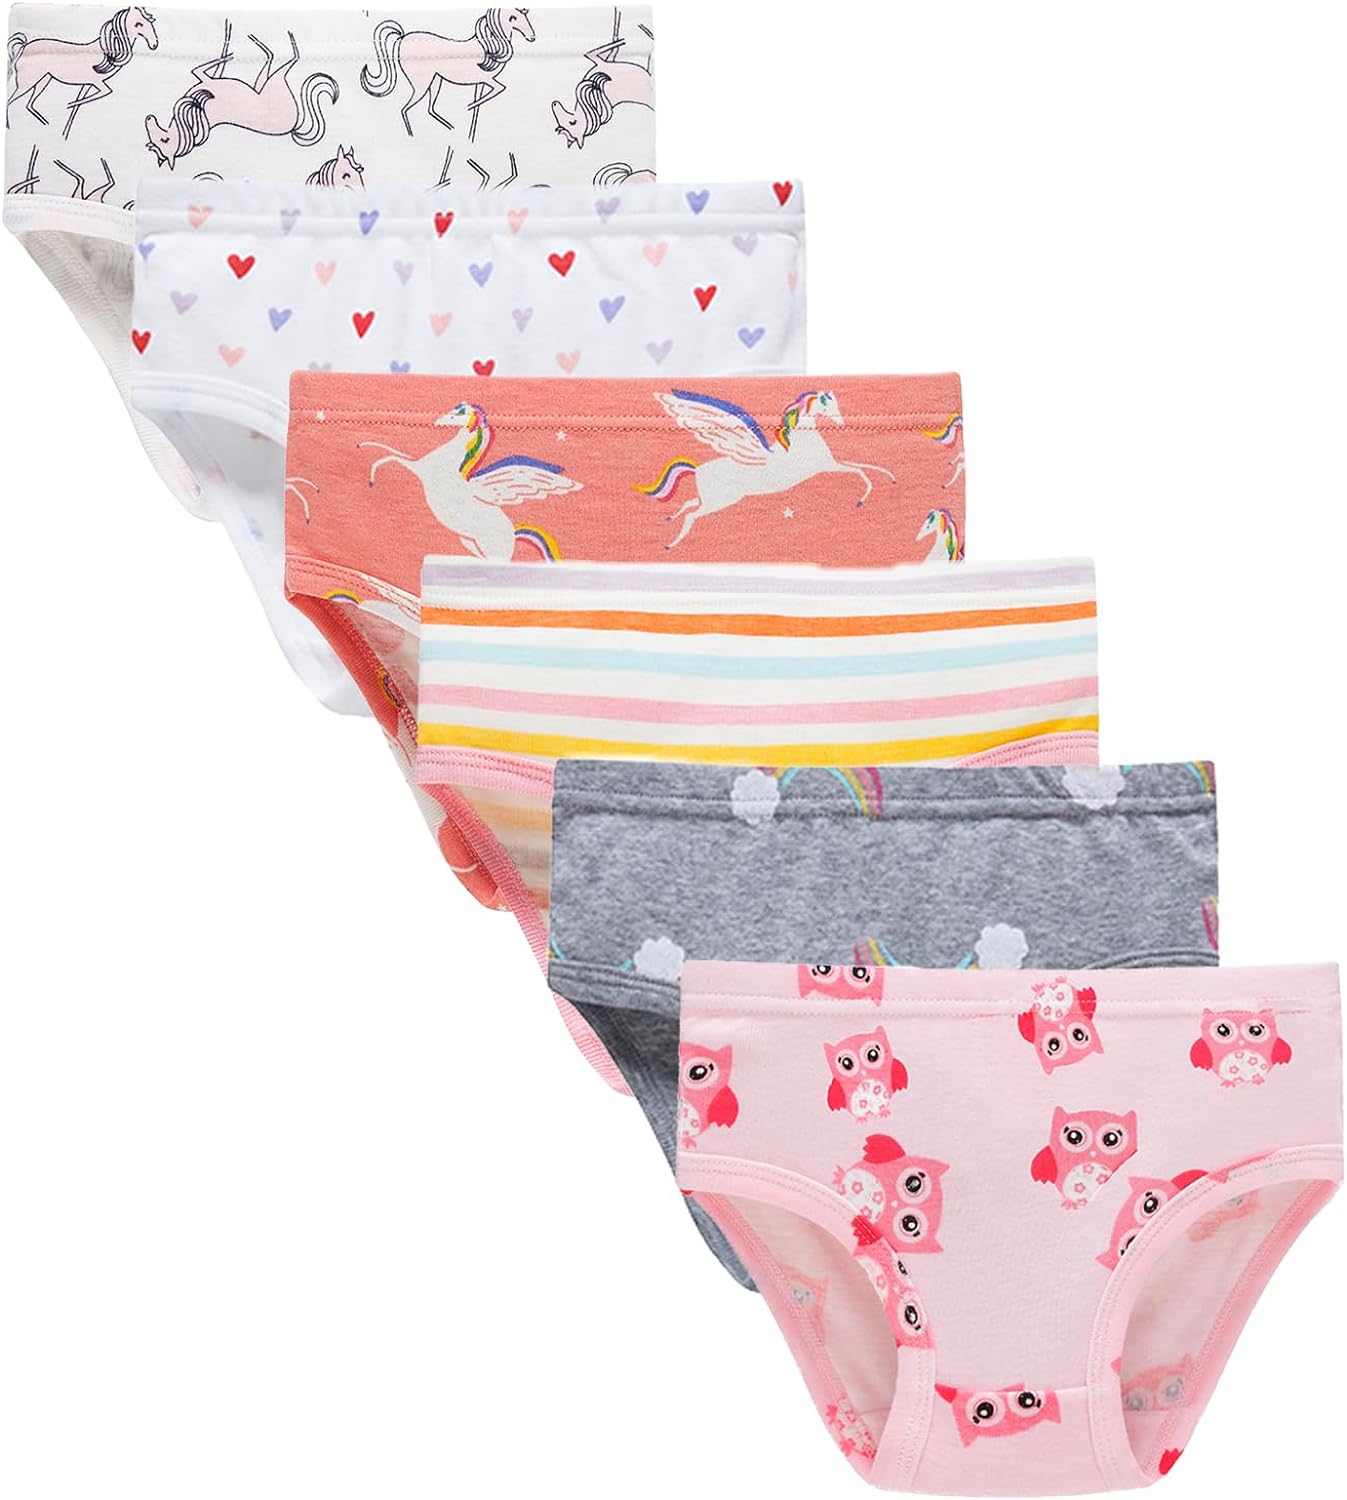 Buy Boboking Baby Soft Cotton Underwear Little Girls'Briefs Toddler Undies  Online at desertcartKUWAIT